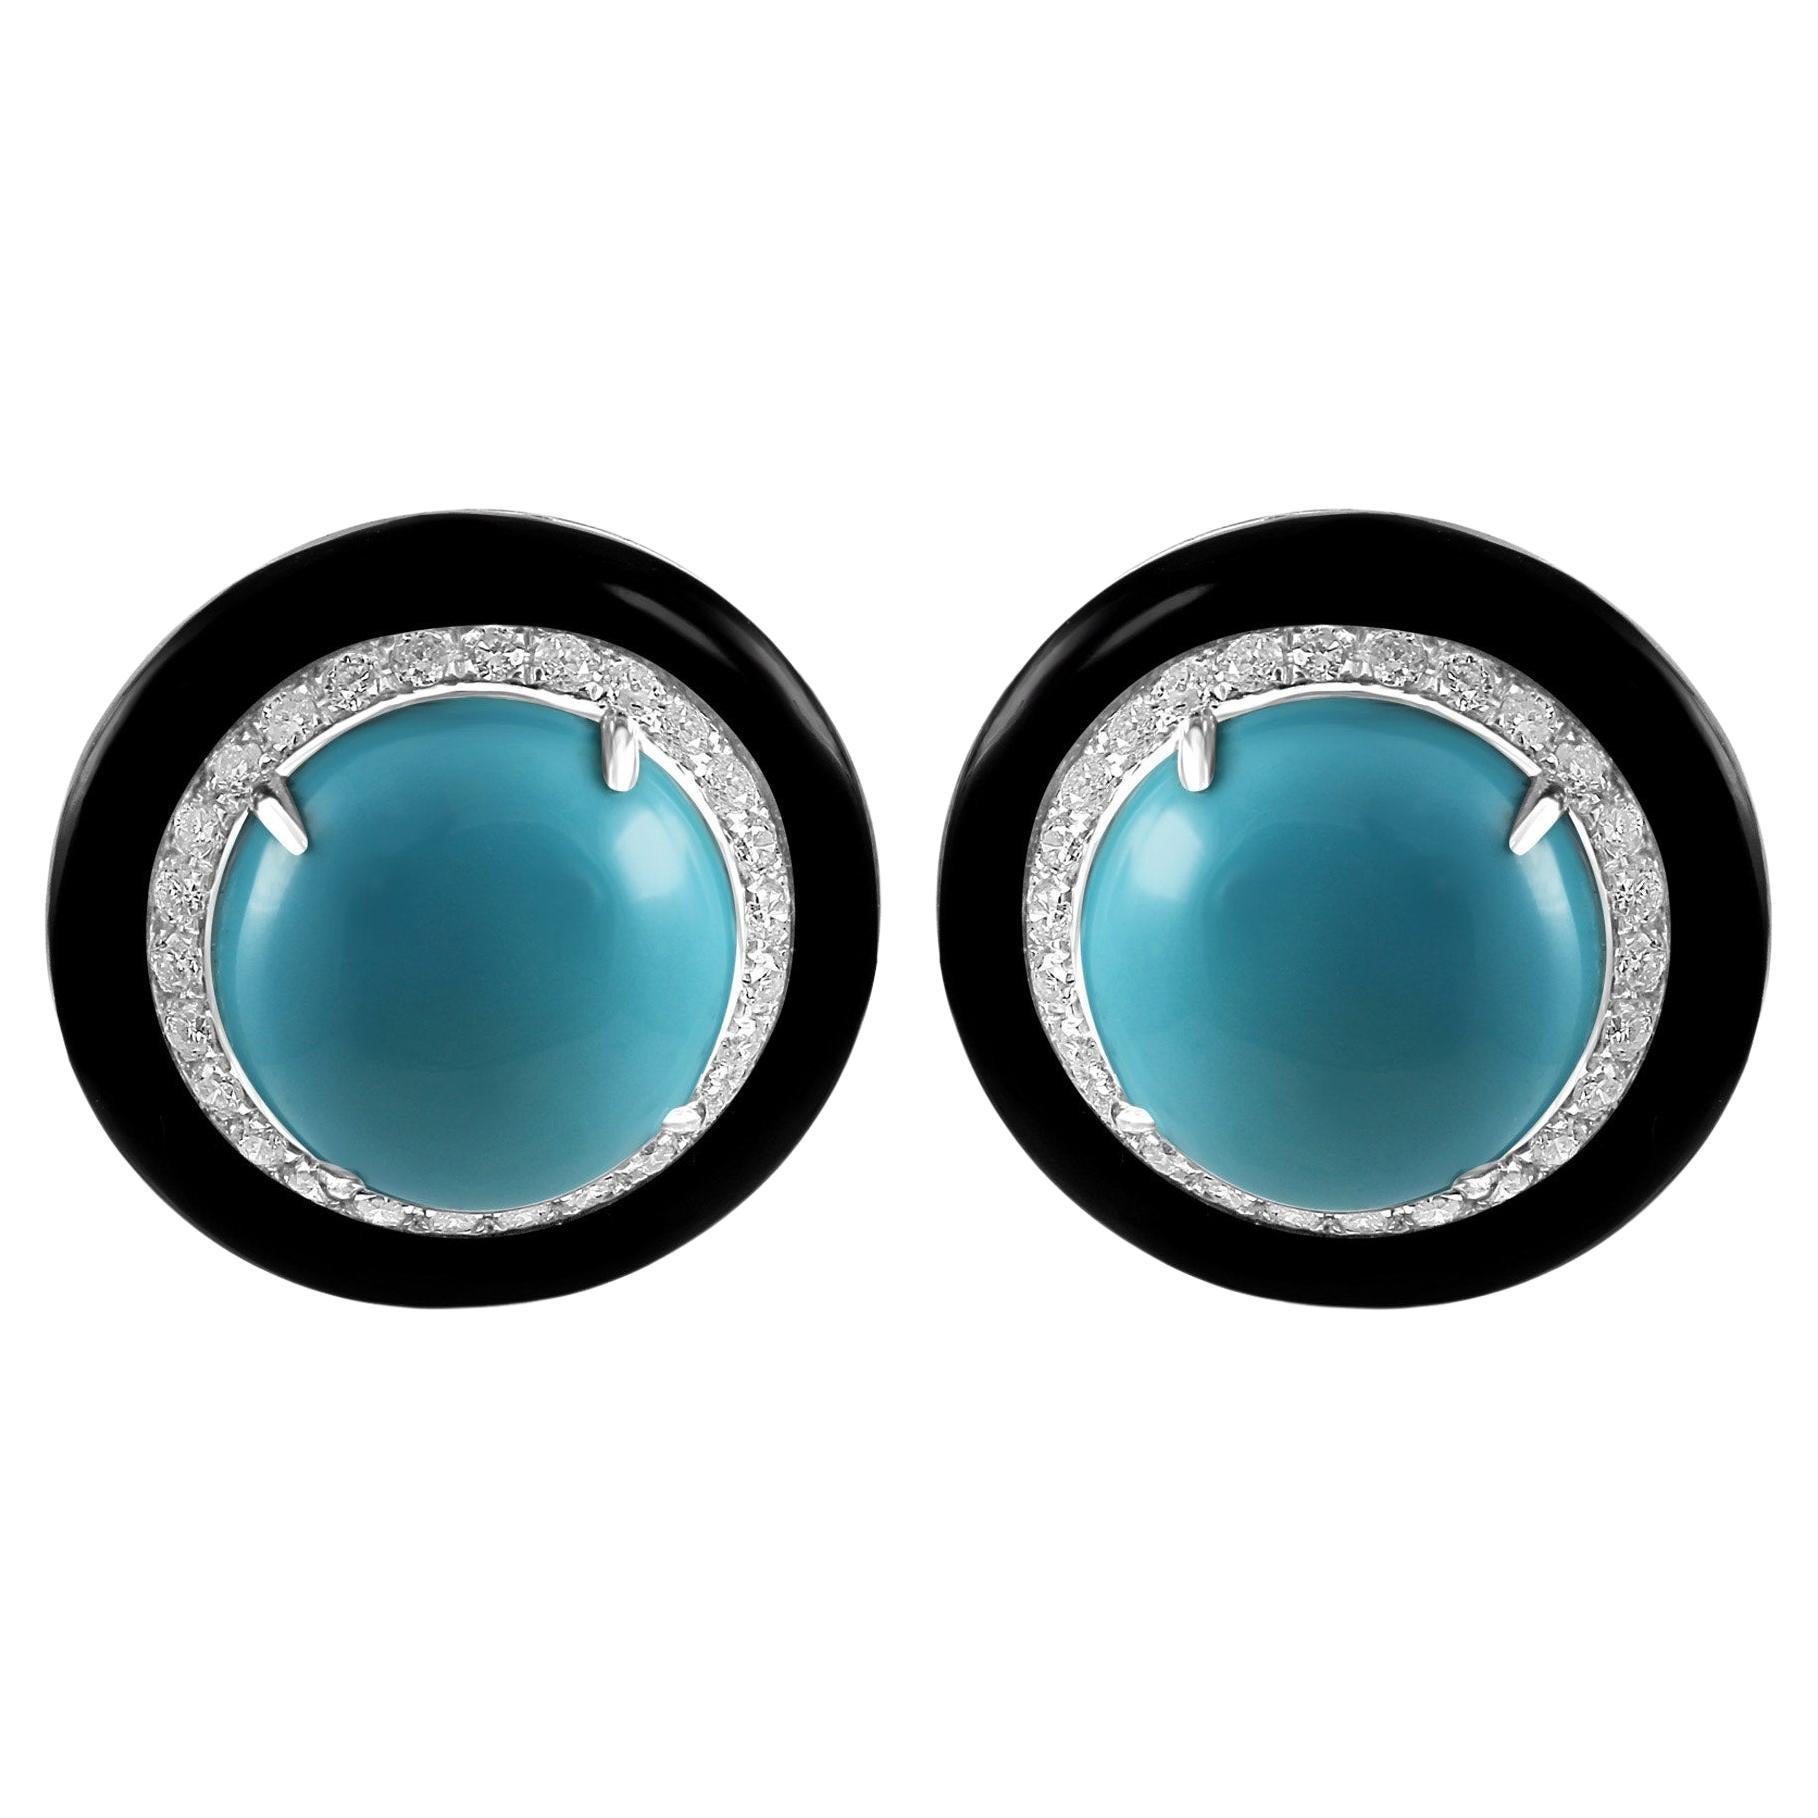 Turquoise Round Diamond Black Onyx Halo 18K White Gold Art Deco Cocktail Earring